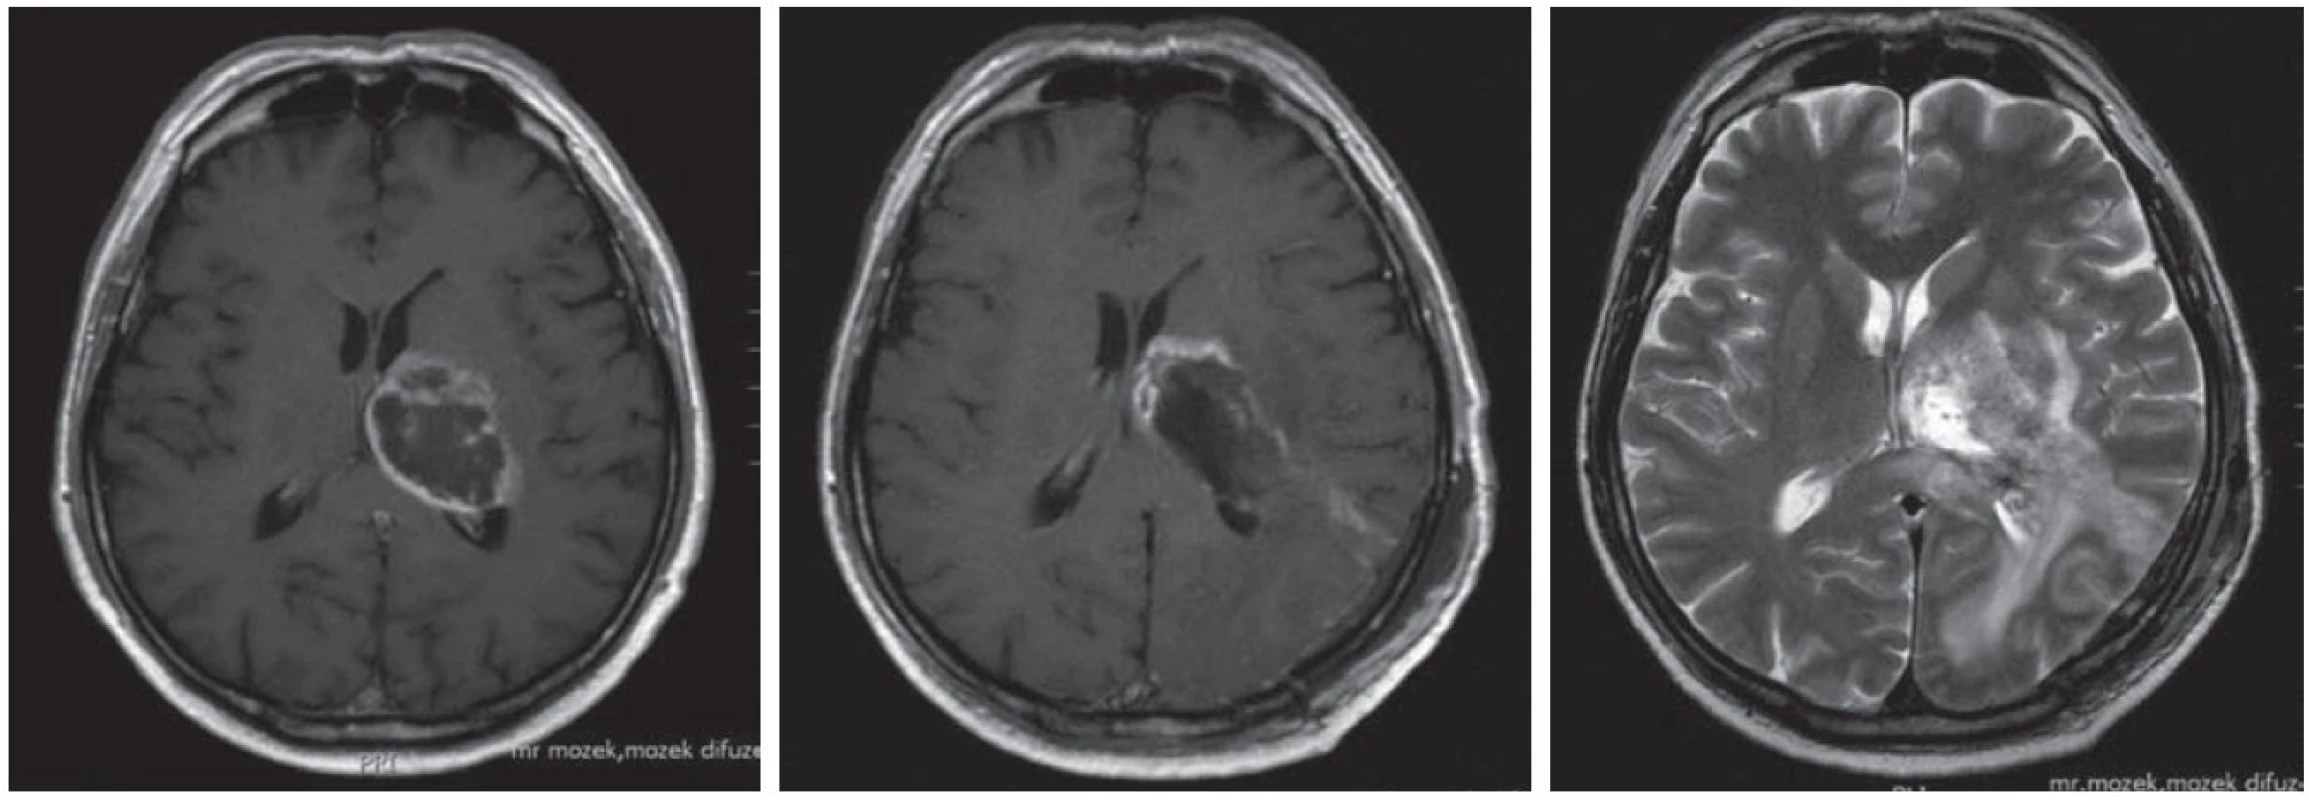 Pacient (61 let) po subtotální exstirpaci glioblastomu levého thalamu (vlevo před operací T1 s kontrastem, uprostřed po operaci T1 s kontrastem, vpravo po operaci T2).